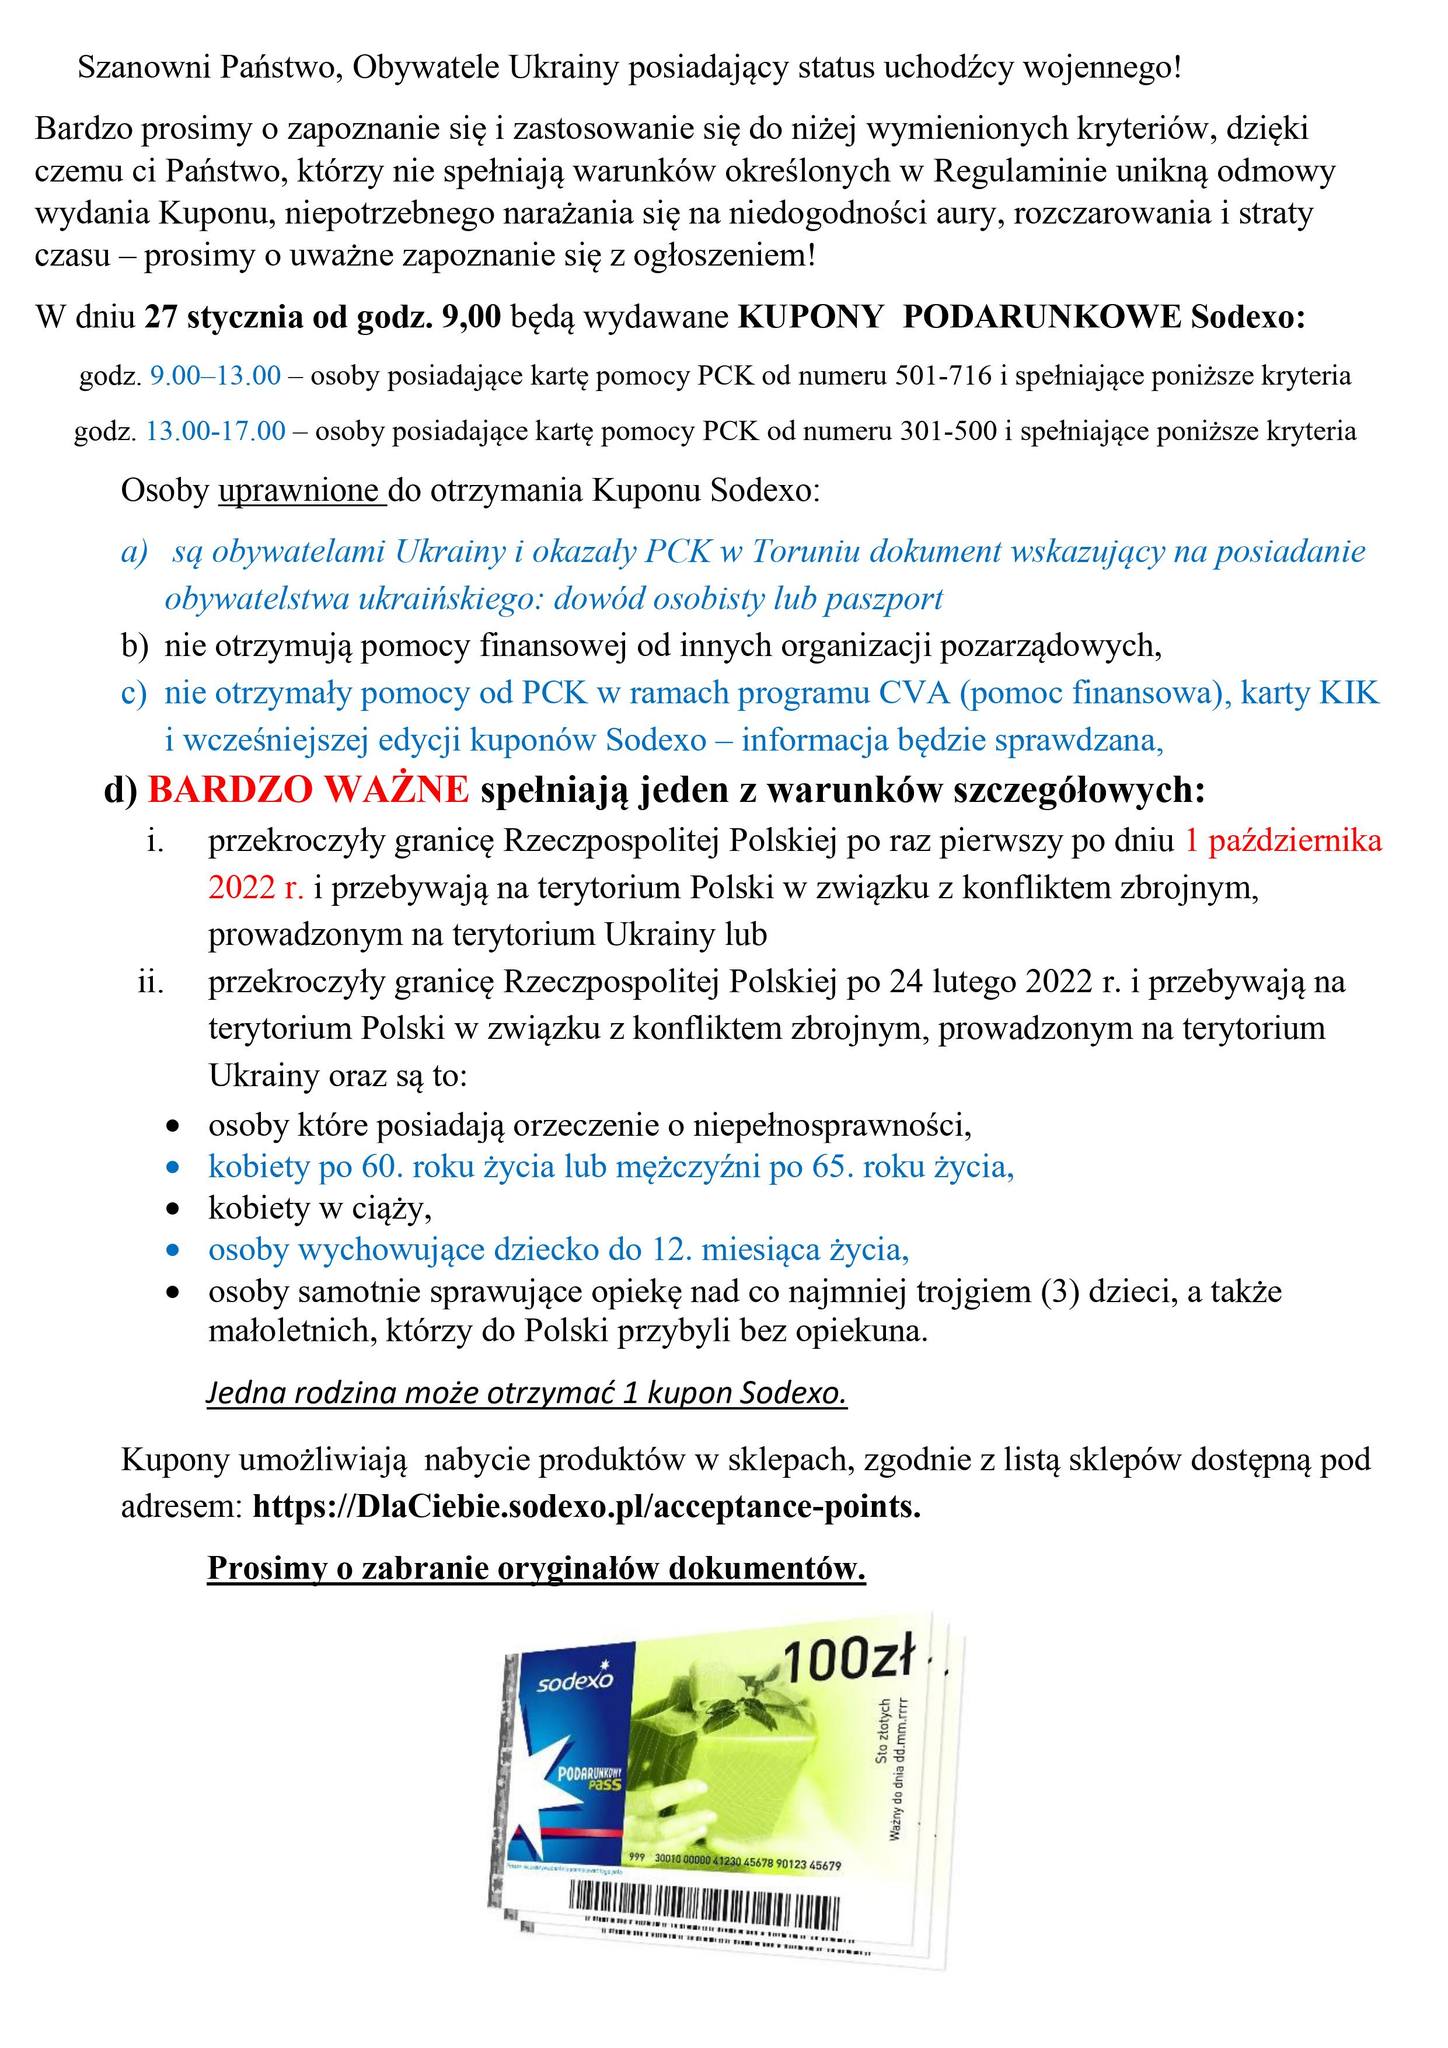 Informacja na temat bonów Sodexo w języku polskim